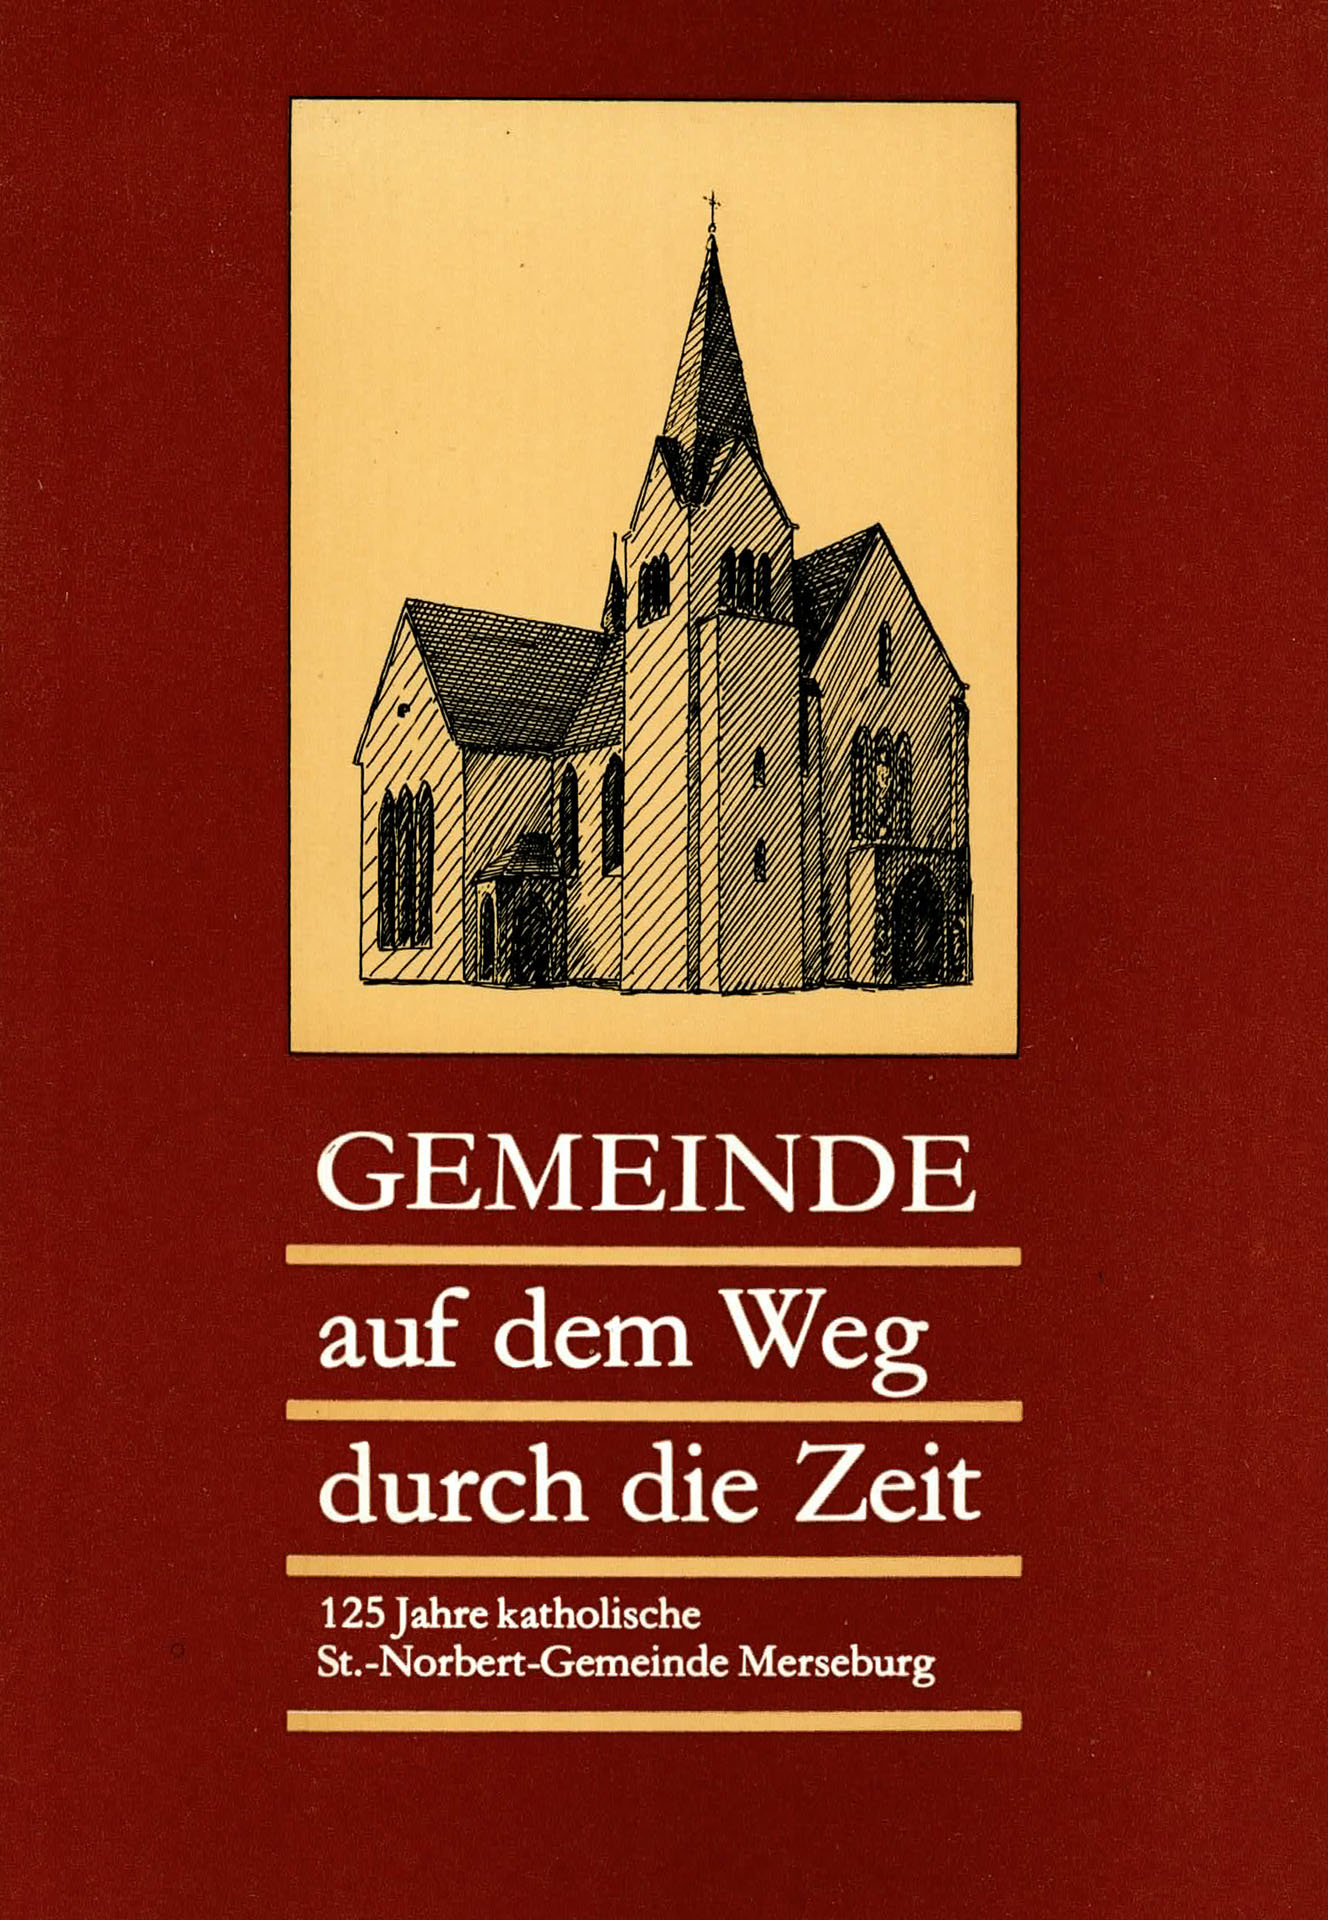 Gemeinde auf dem Weg durch die Zeit - 125 Jahre katholische St. - Norbert - Gemeinde Merseburg - Steinhoff, Theo (Hersgb.)